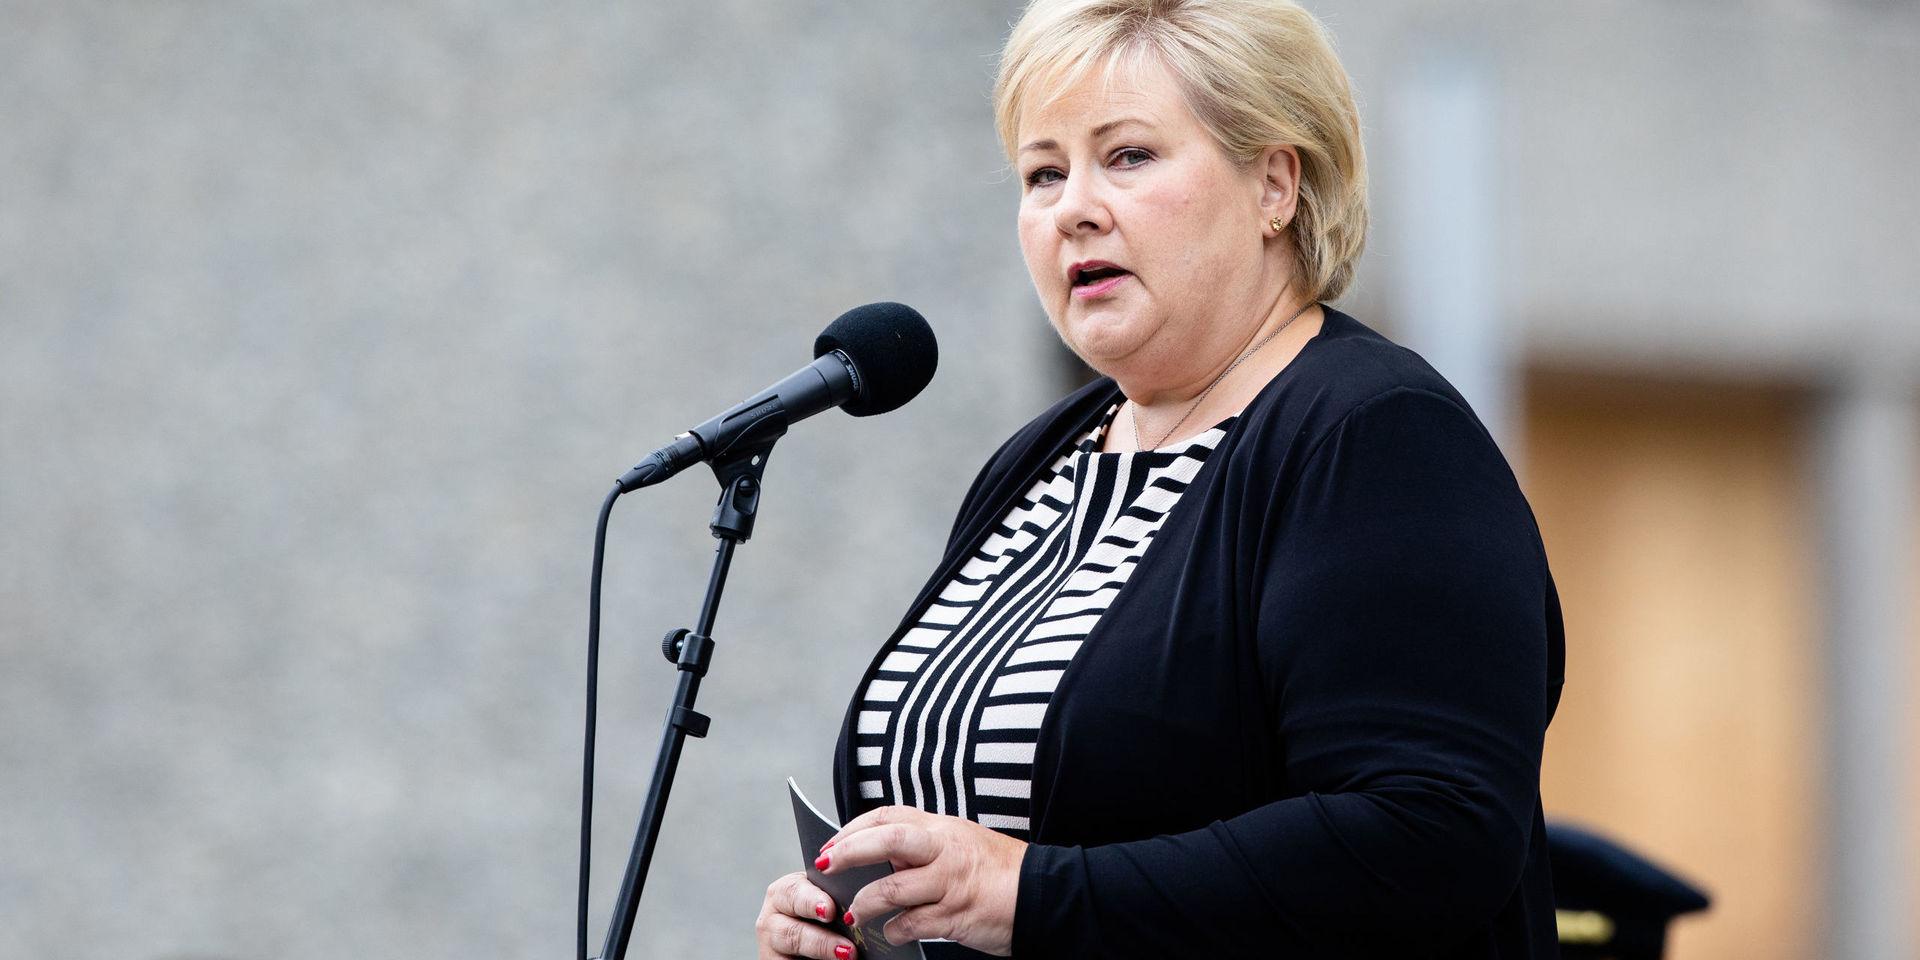 Oslo  20180722För statsminister Erna Solberg väntar en ödesvecka som kan sluta med en norsk regeringskris.Foto: Audun Braastad / NTB scanpix / TT / kod  20520